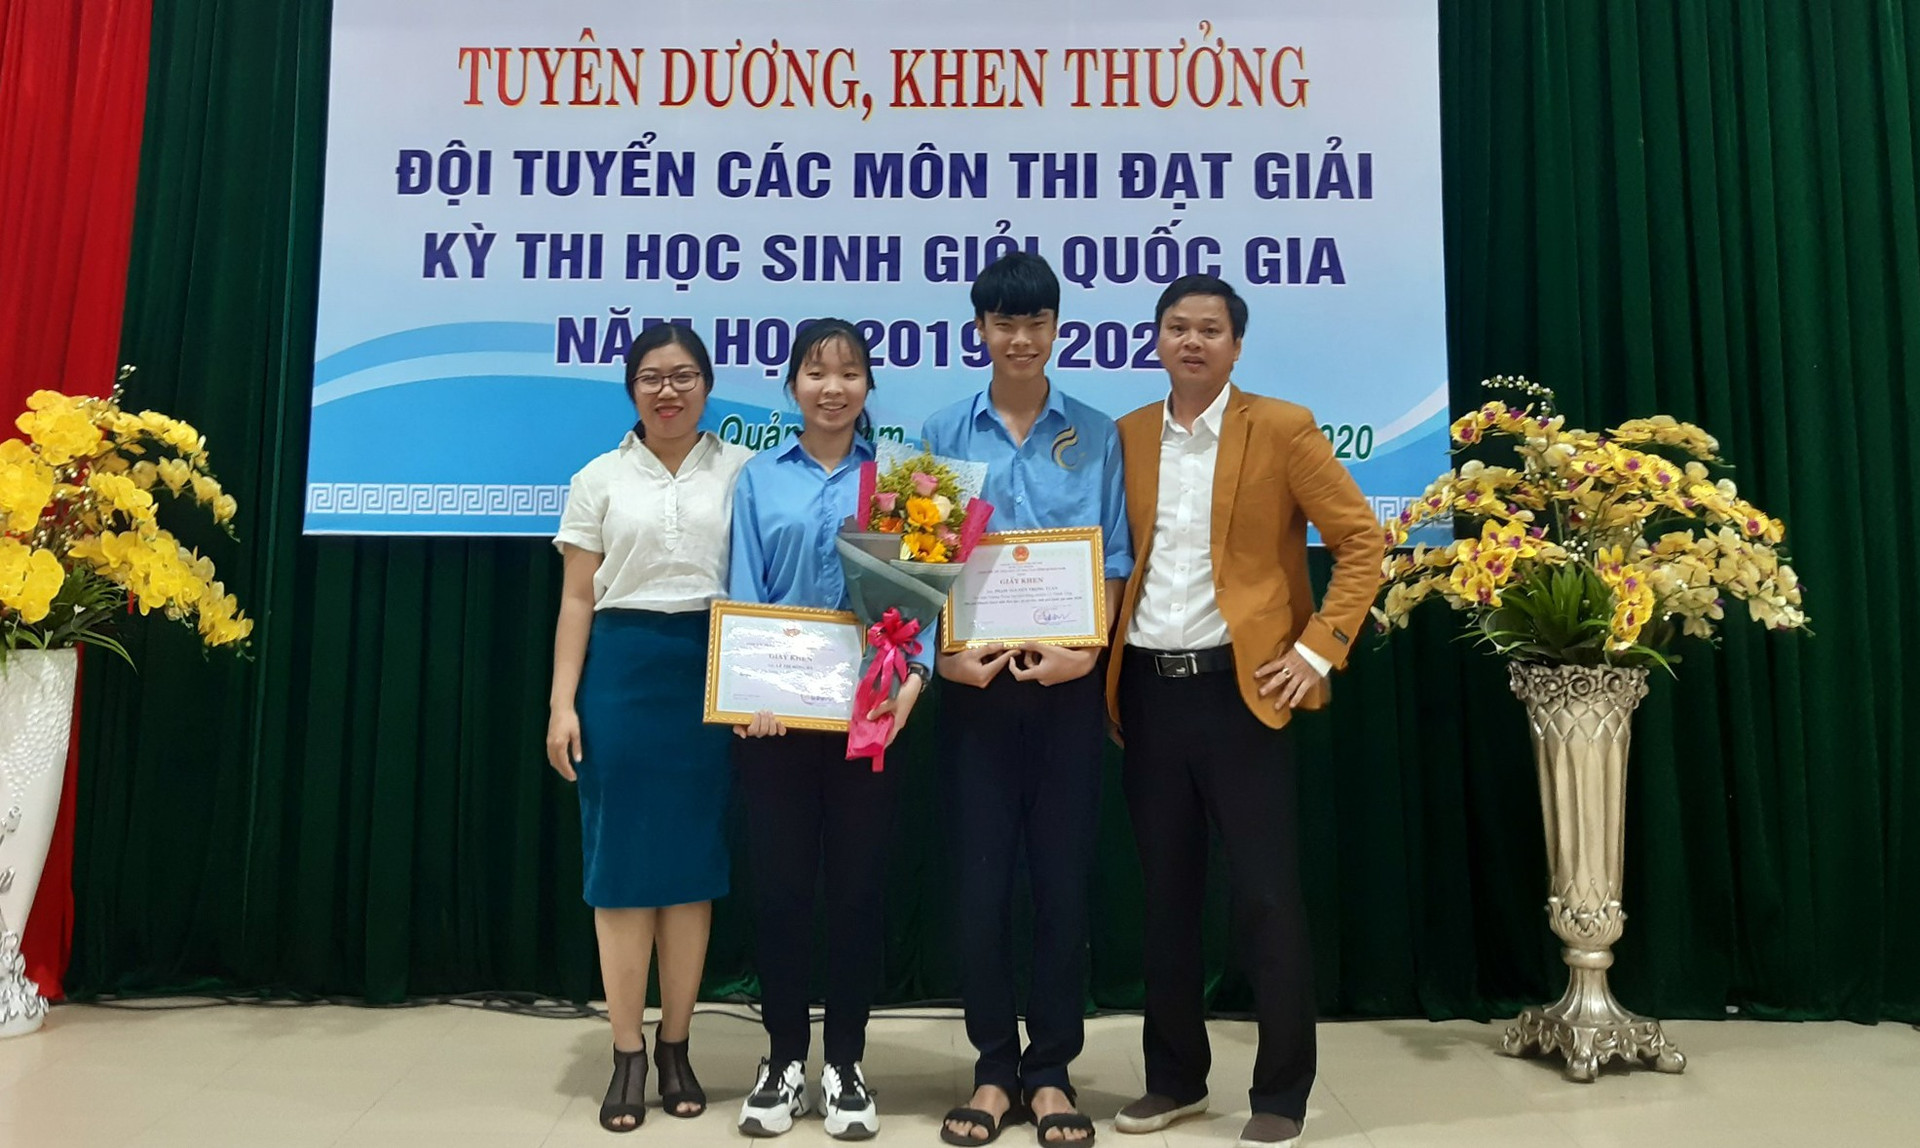 Lê Thị Hồng Hà (thứ 2, từ trái sang) - cô gái mê Hóa học. Ảnh: N.V.C.C